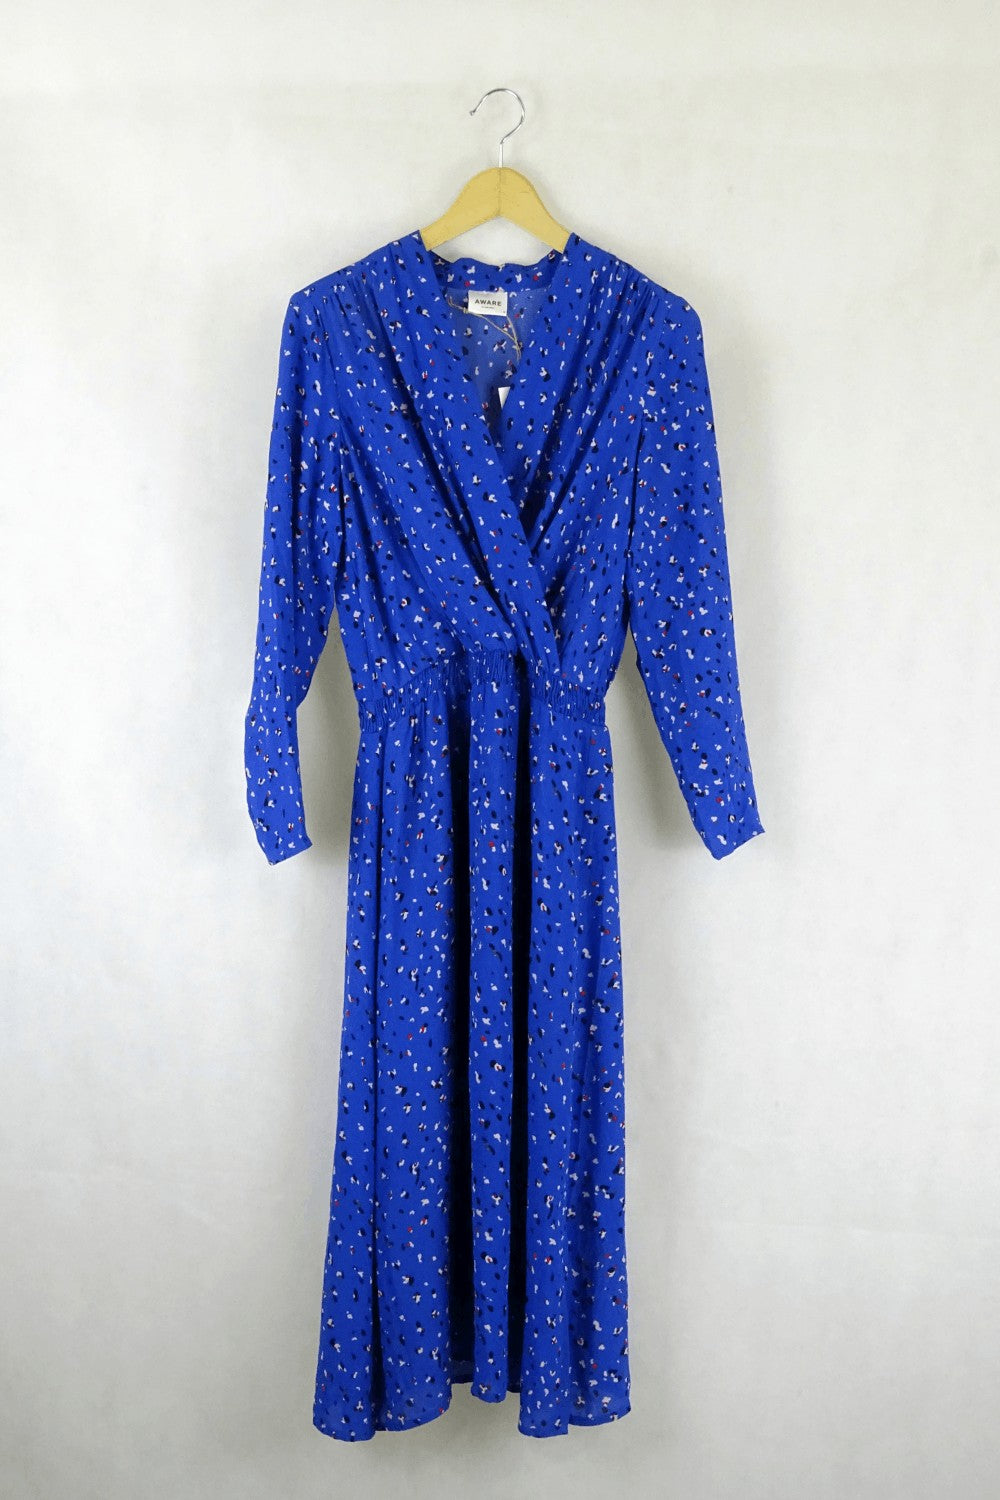 Aware By Vero Moda Blue Print Faux Wrap Dress